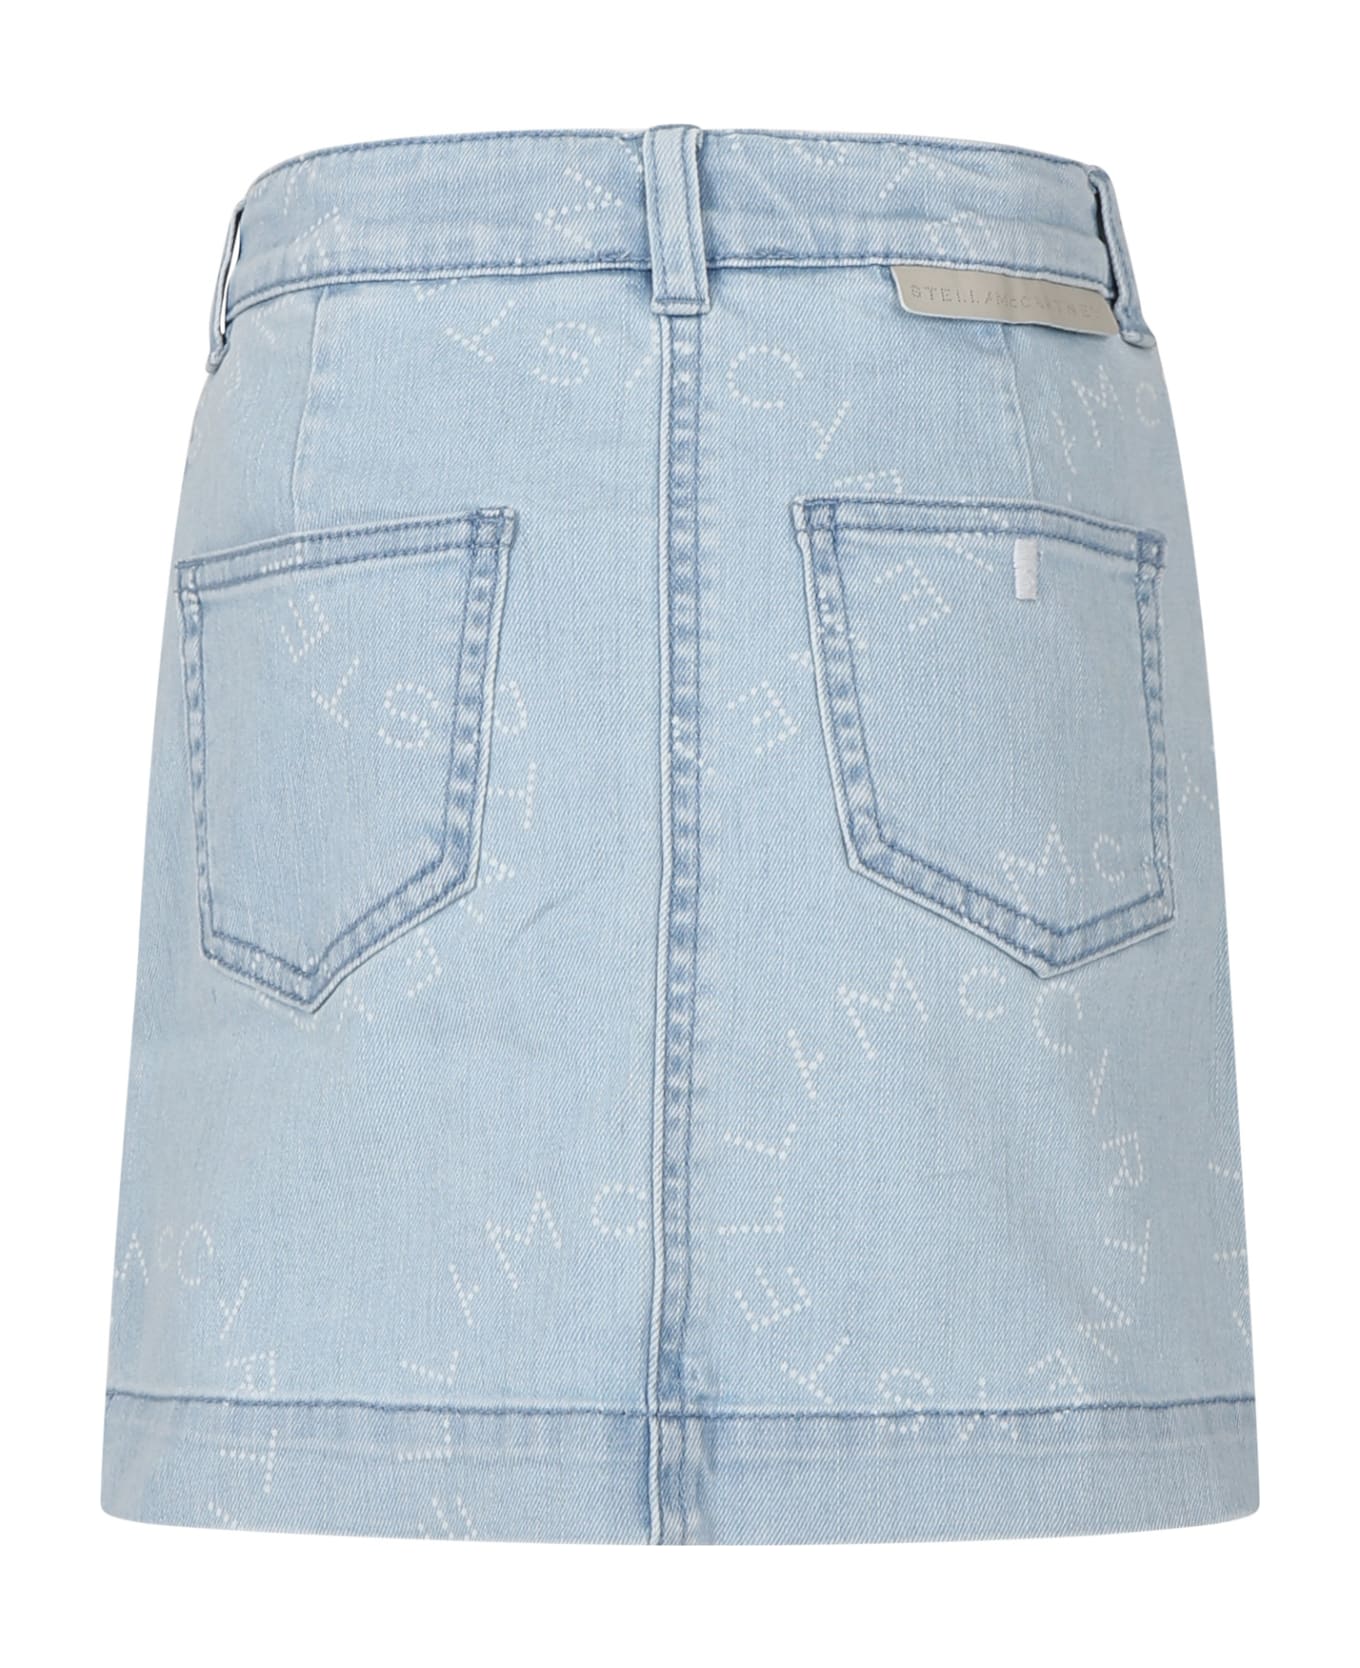 Stella McCartney Kids Denim Skirt For Girl With Logo - Blue ボトムス